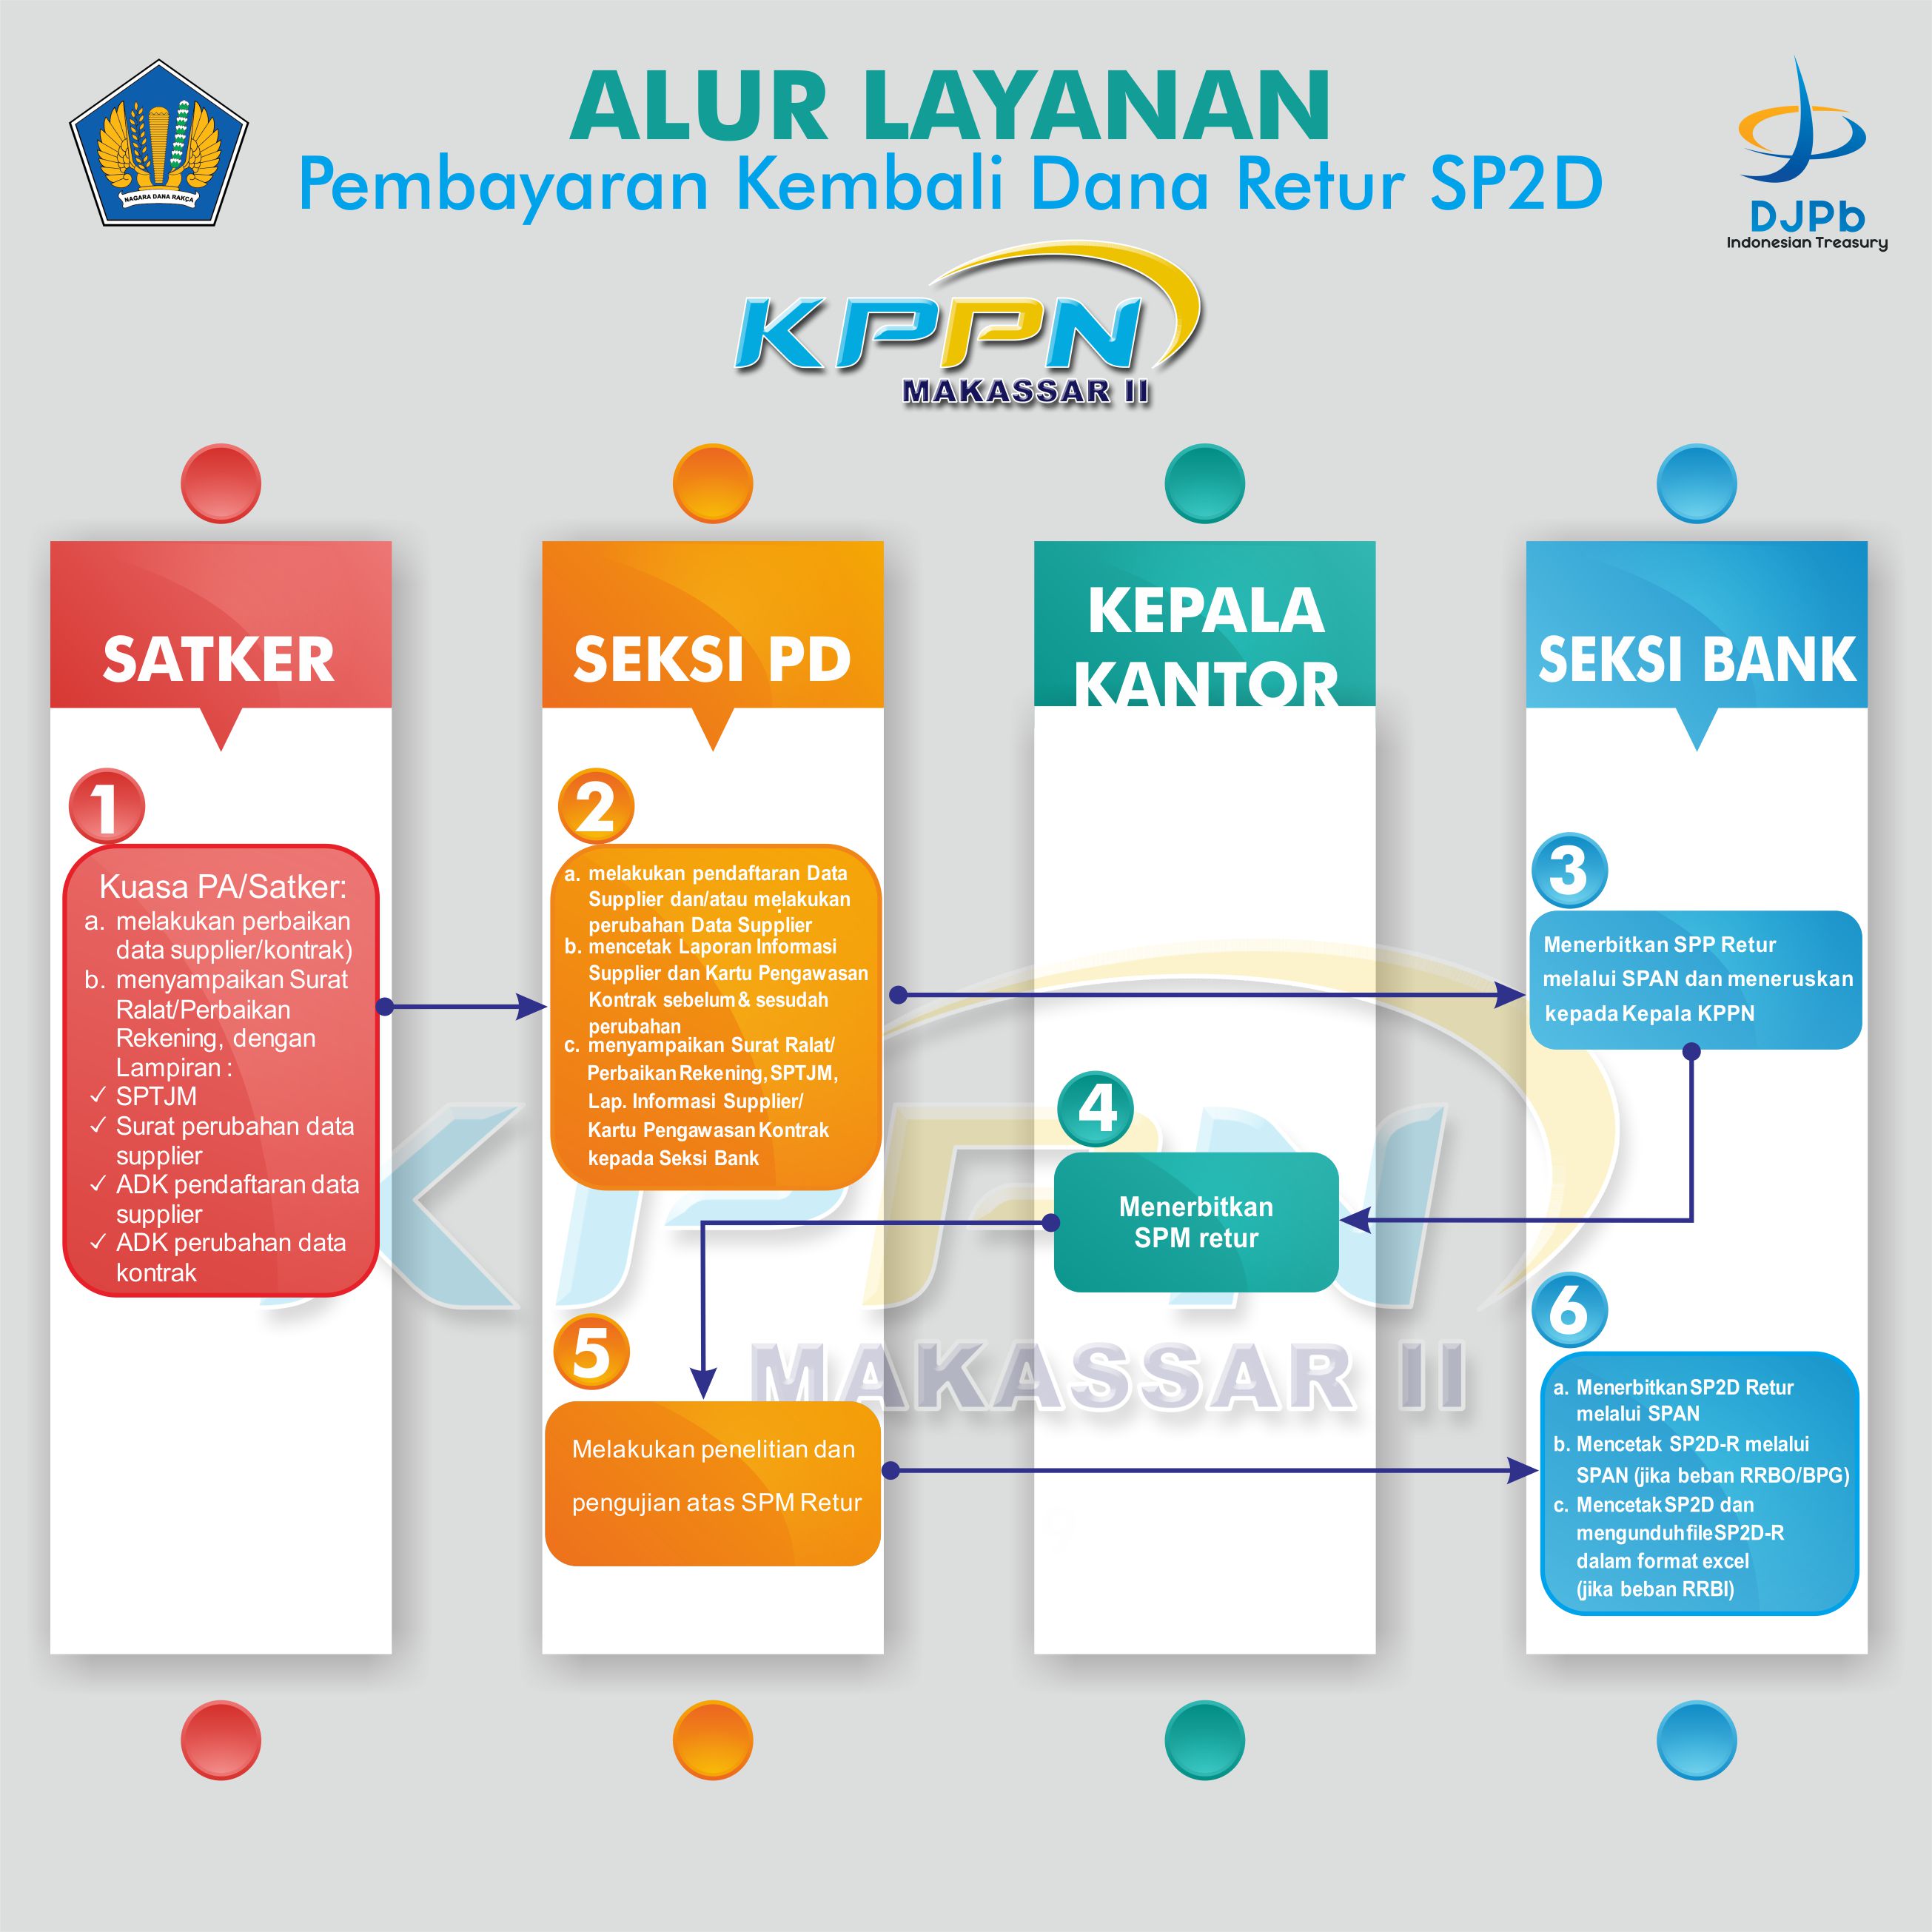 Alur Pembayaran Kembali Dana Retur SP2D KPPN Makassar II